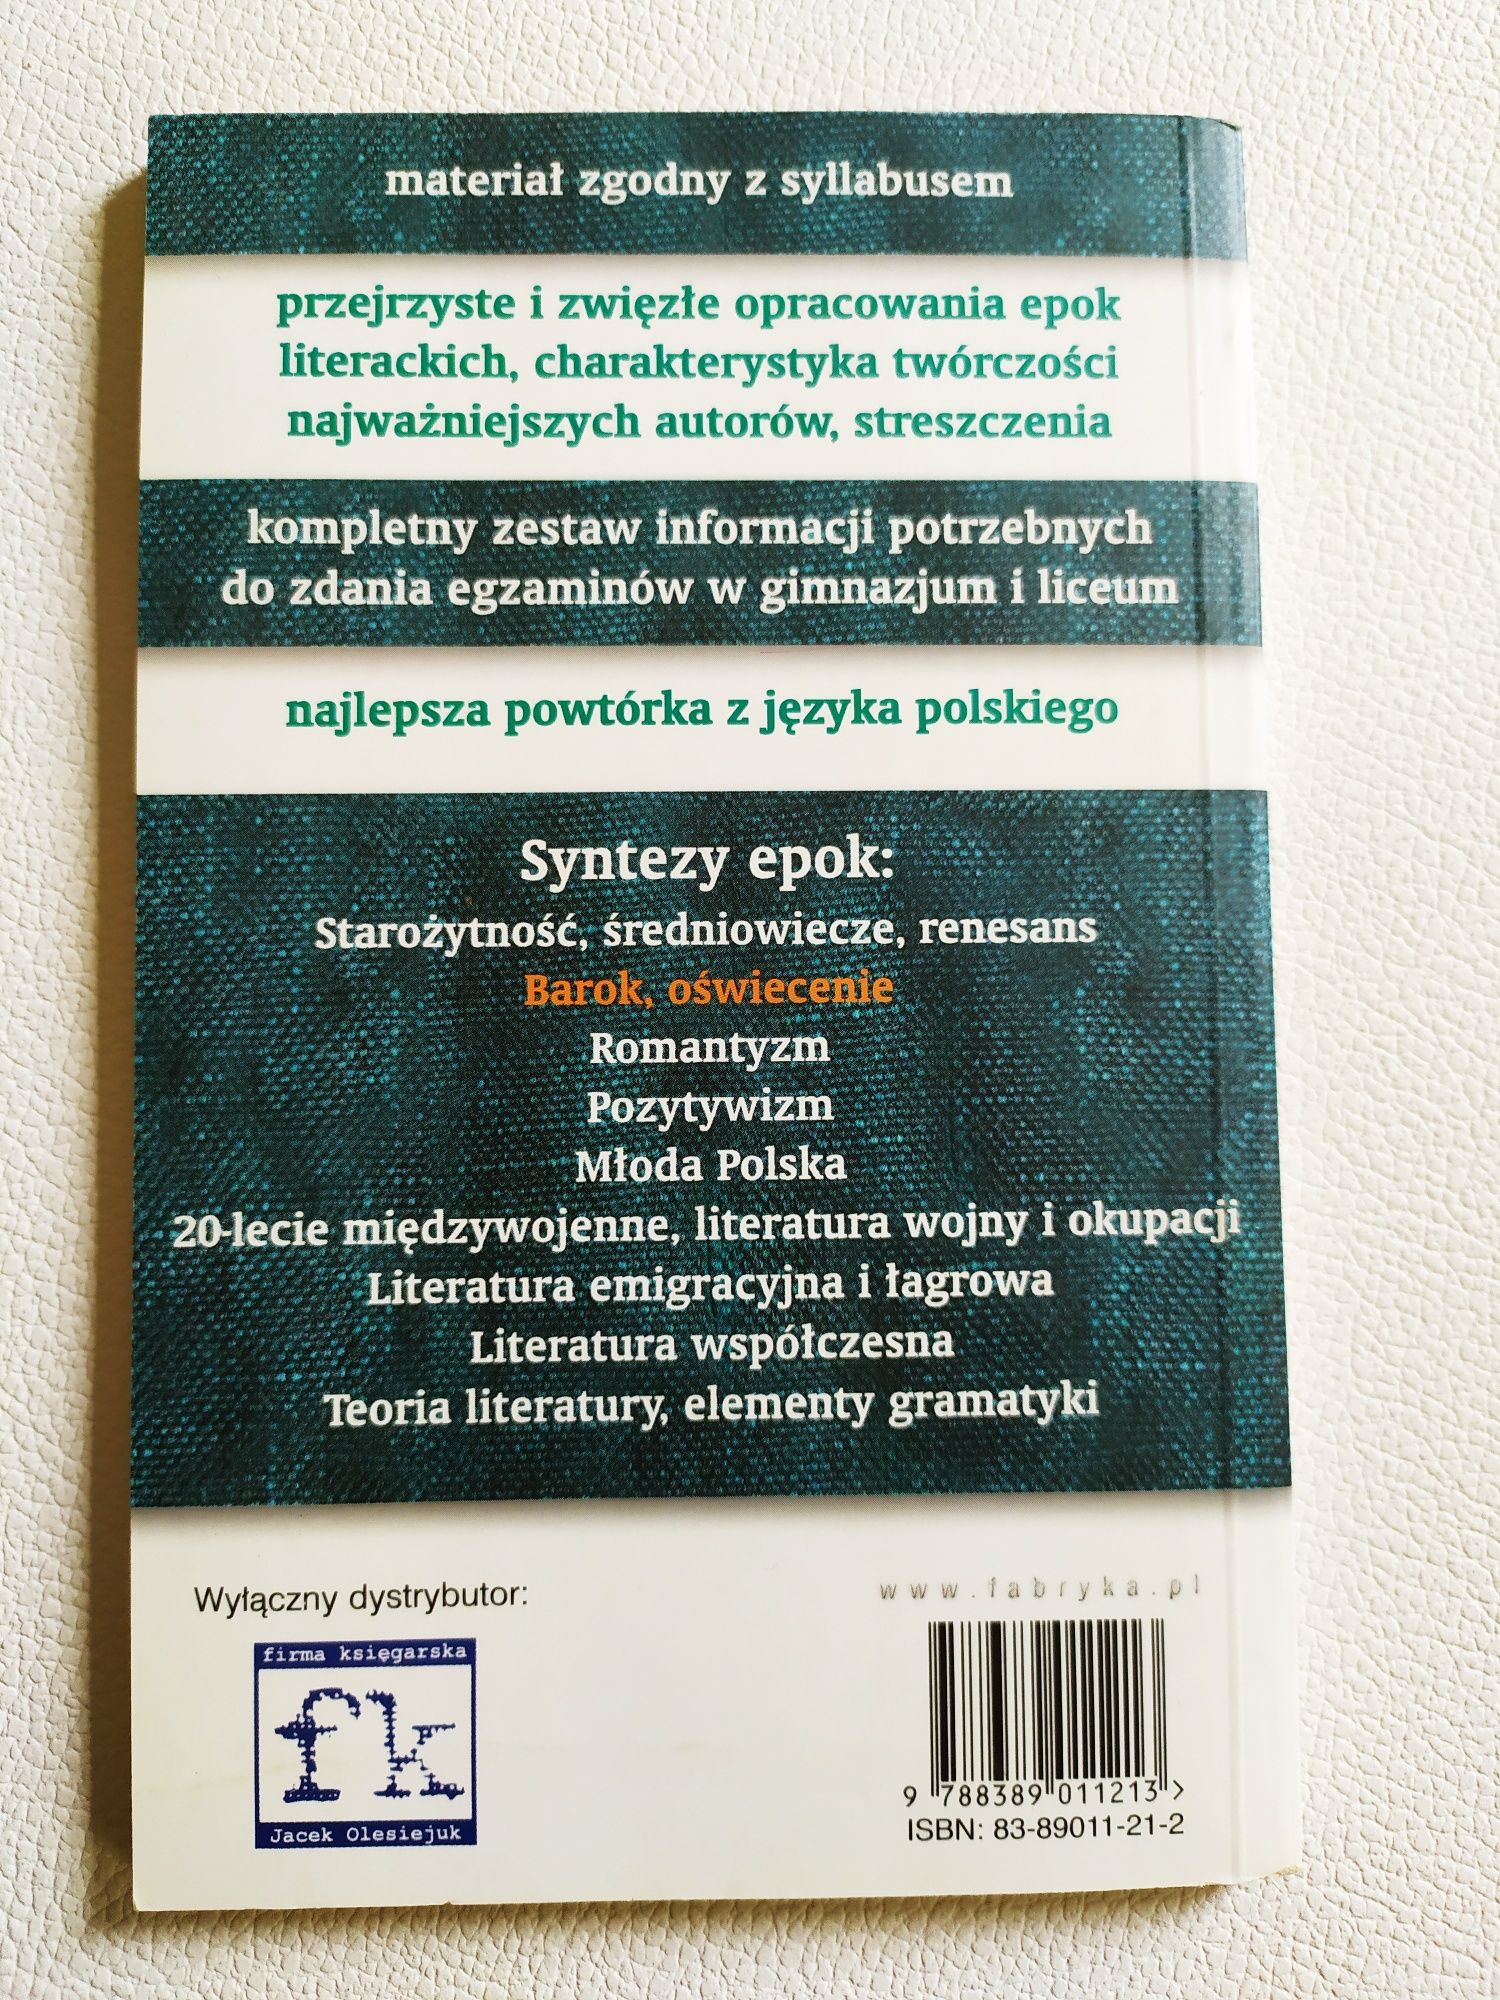 Książka Barok Oświecenie język polski skrypt